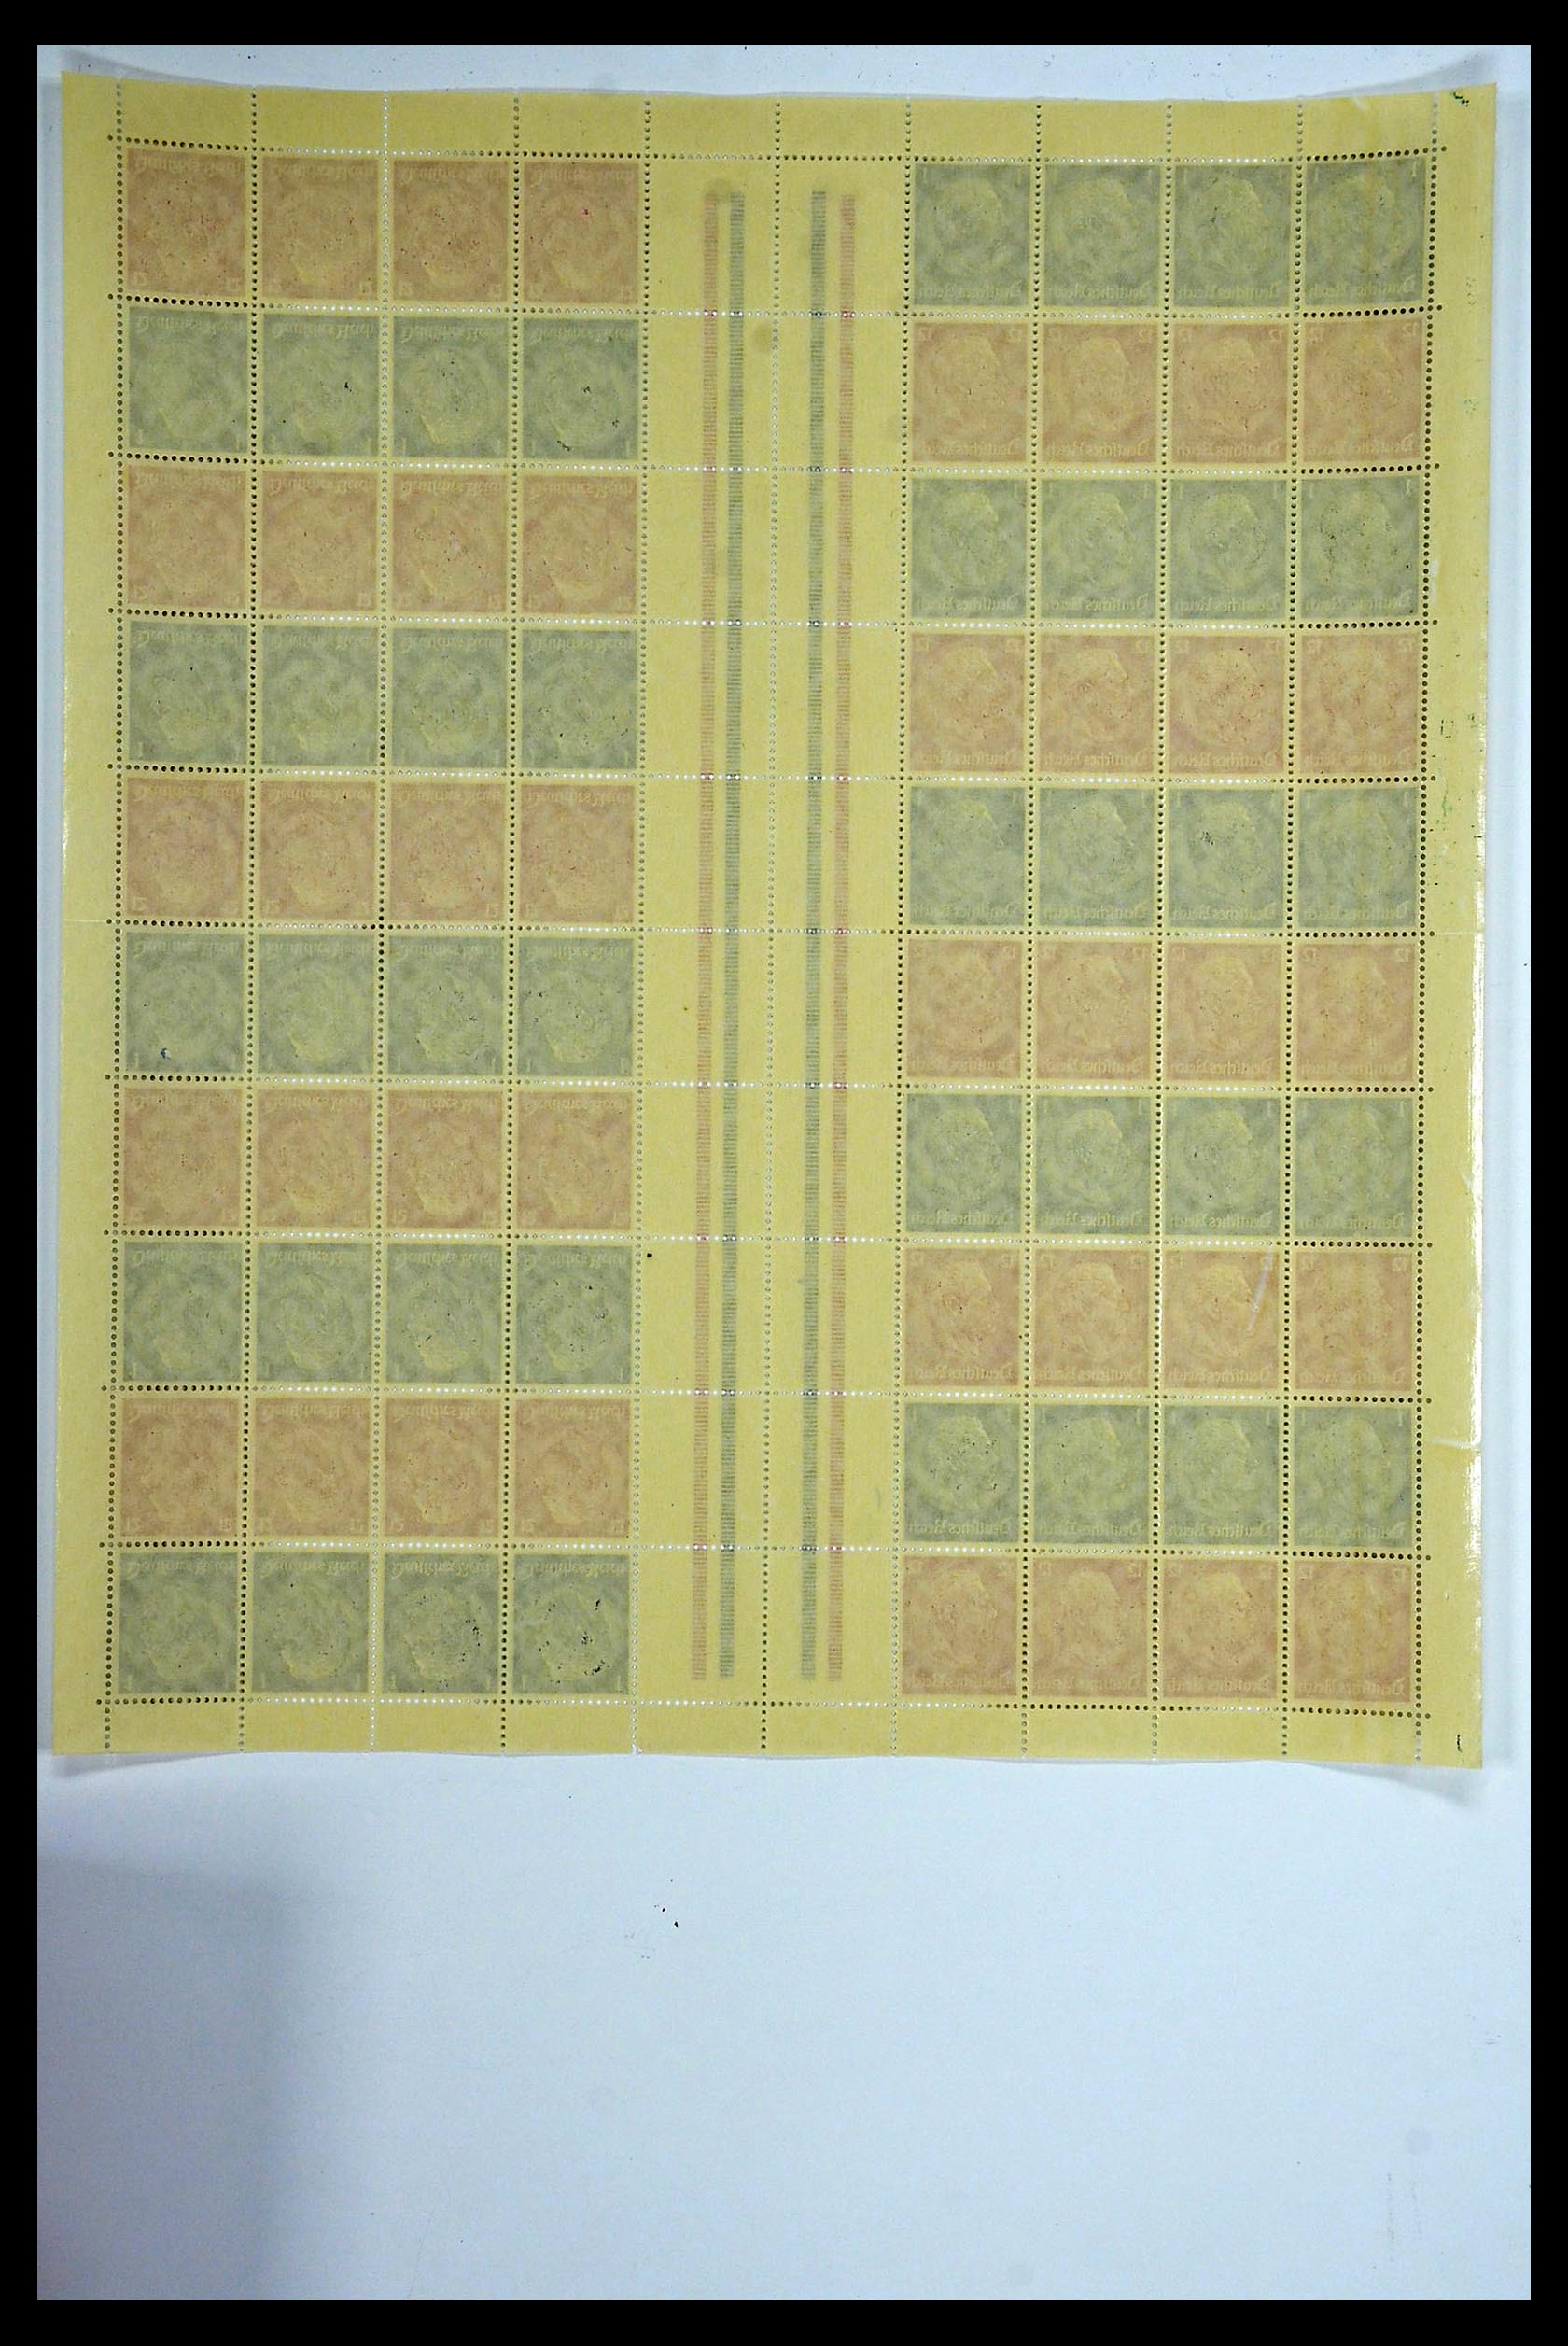 34164 024 - Stamp collection 34164 German Reich Markenheftchenbogen 1933-1942.